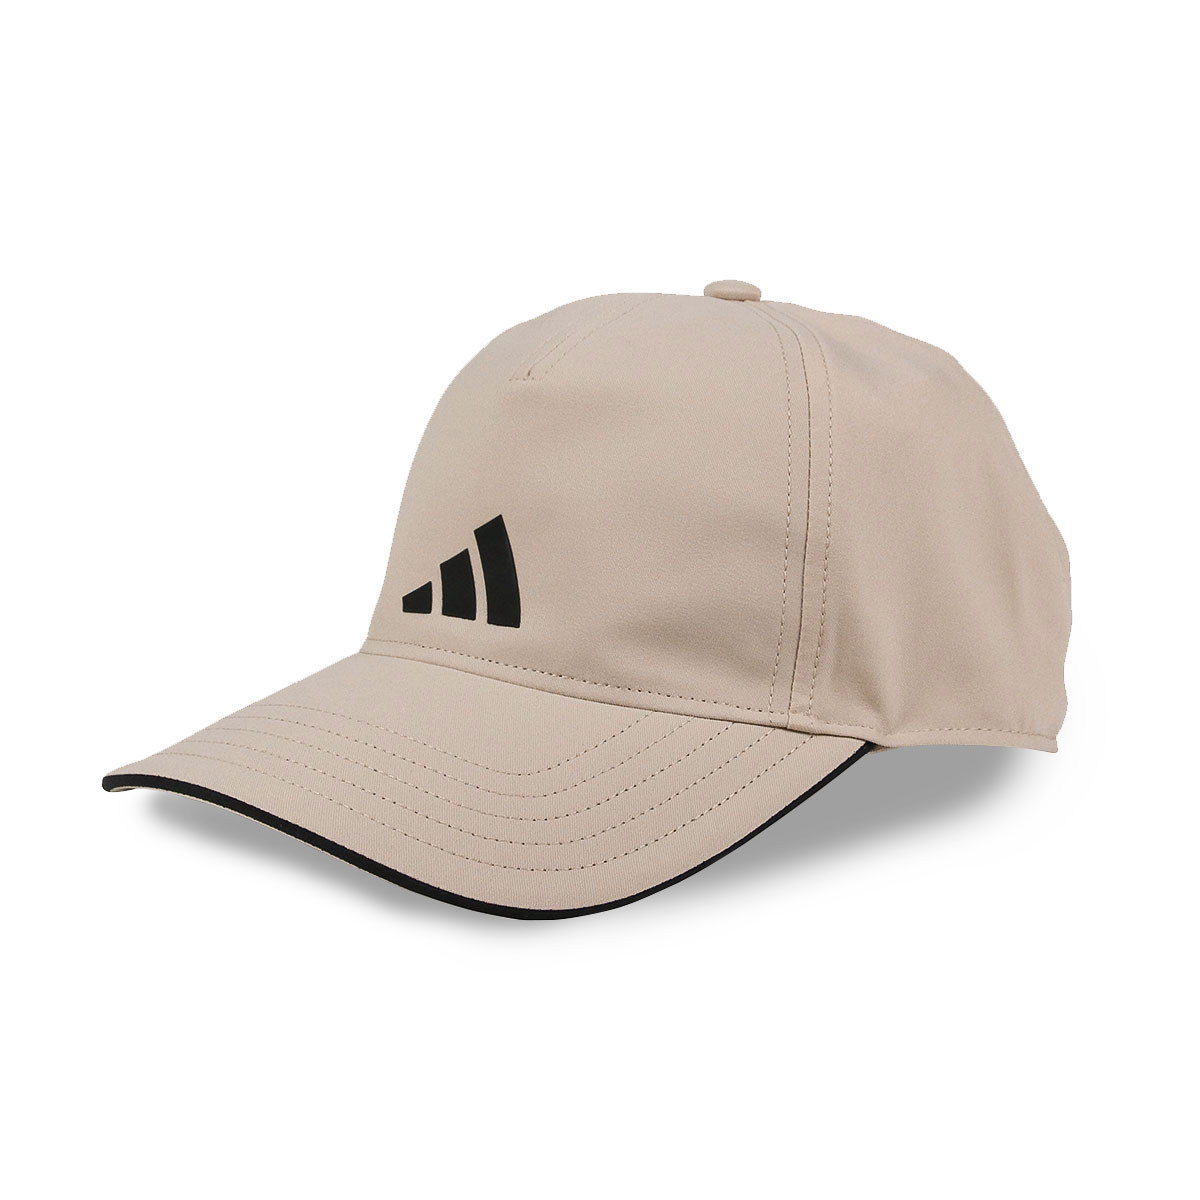 アディダス キャップ メンズ レディース 帽子 ブランド ロゴ ユニセックス スポーツ ブラック 黒 ホワイト 白 adidas AEROREADY 